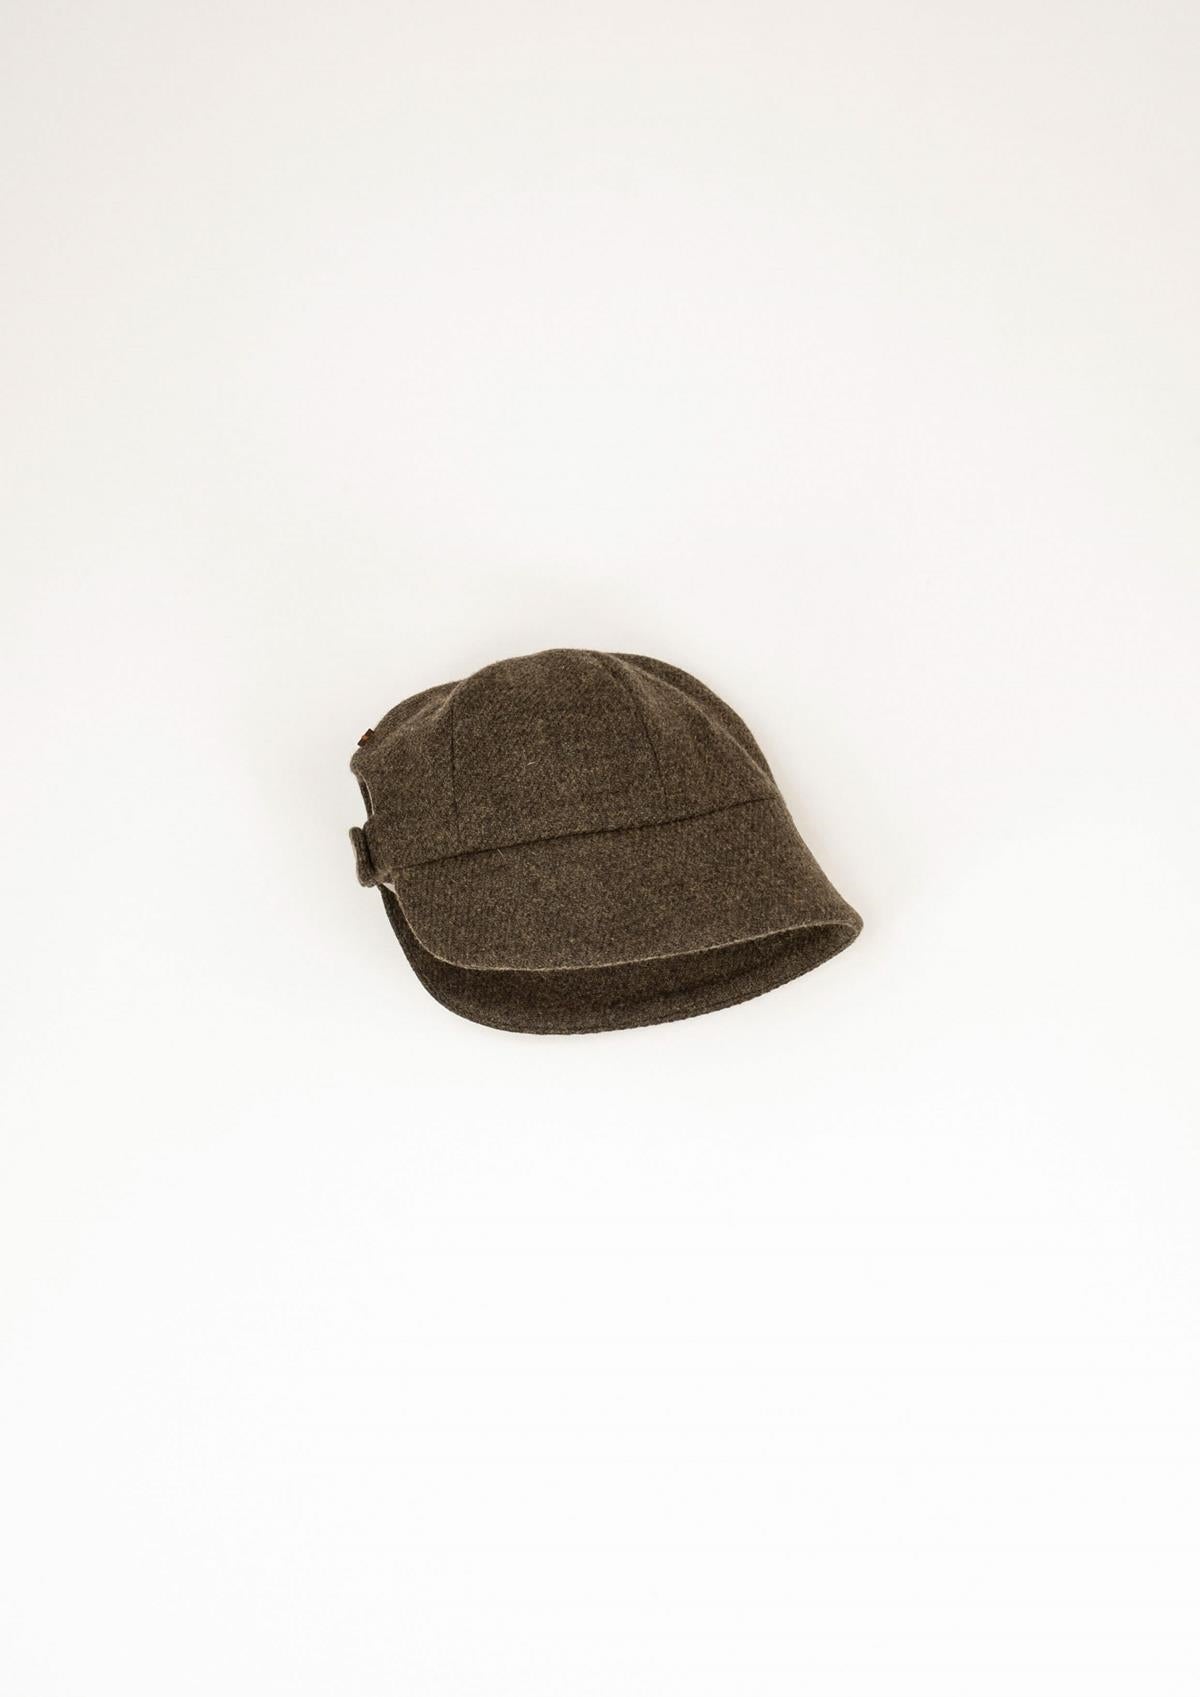 42.2 Green woollen hat with strap.-Popelin